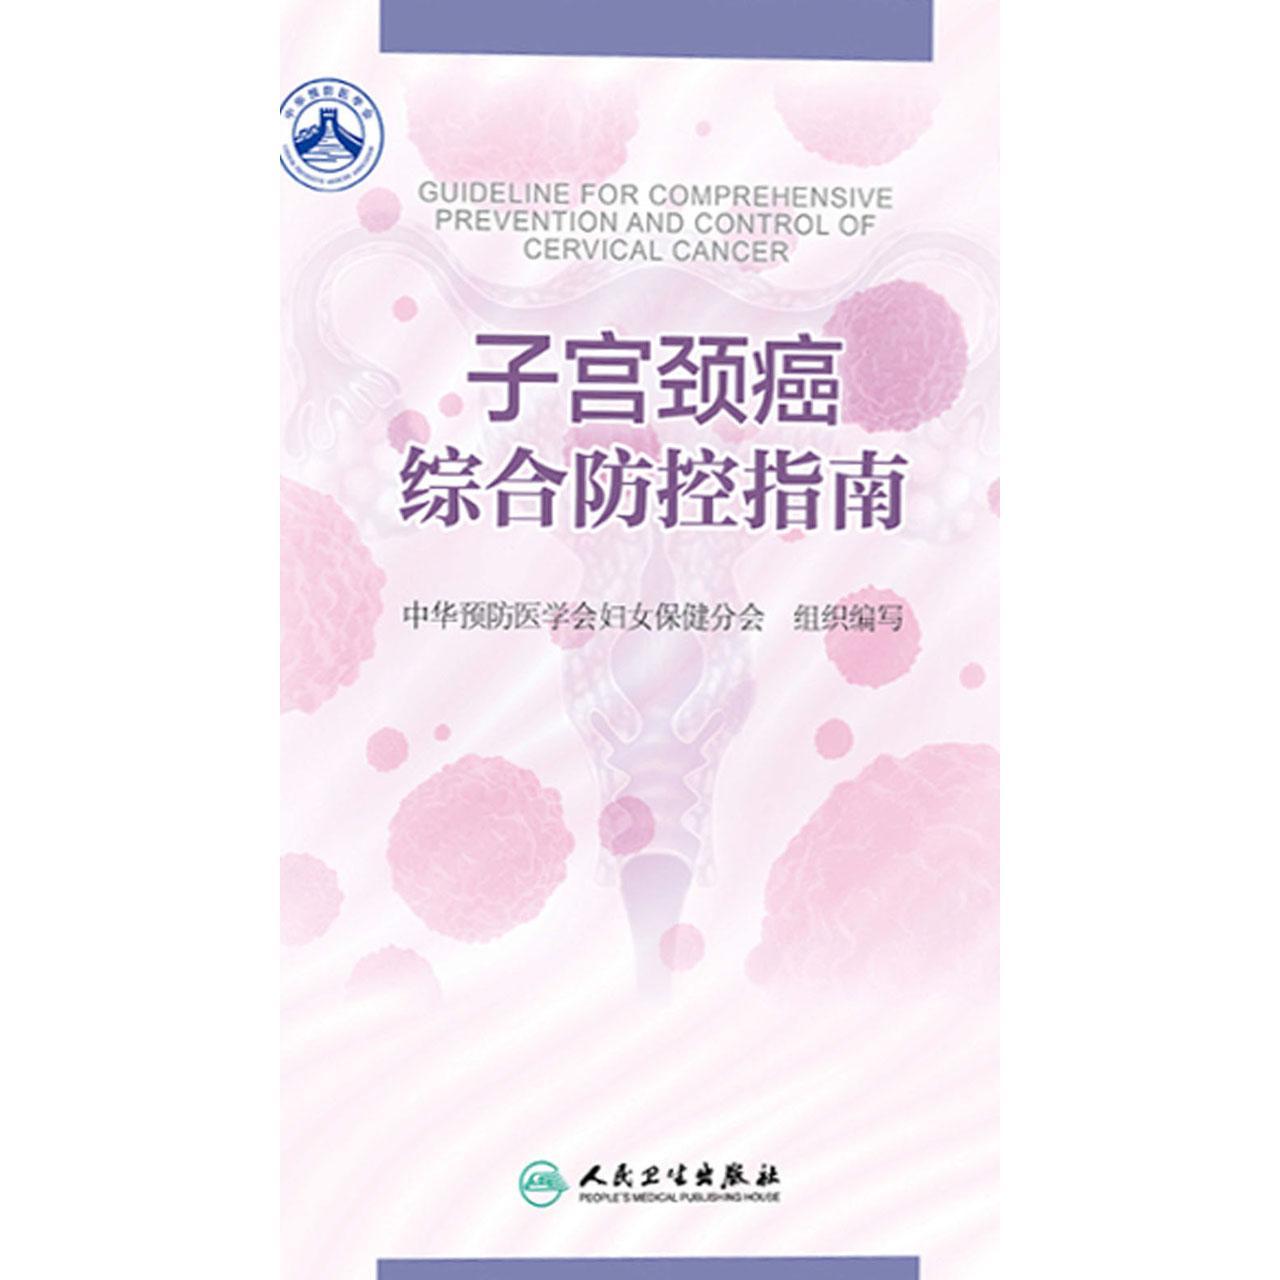 女性医学 生殖器 卵巢 宫口 宫颈 输卵管 子宫 妇科 阴道 子宫颈-cg模型免费下载-CG99